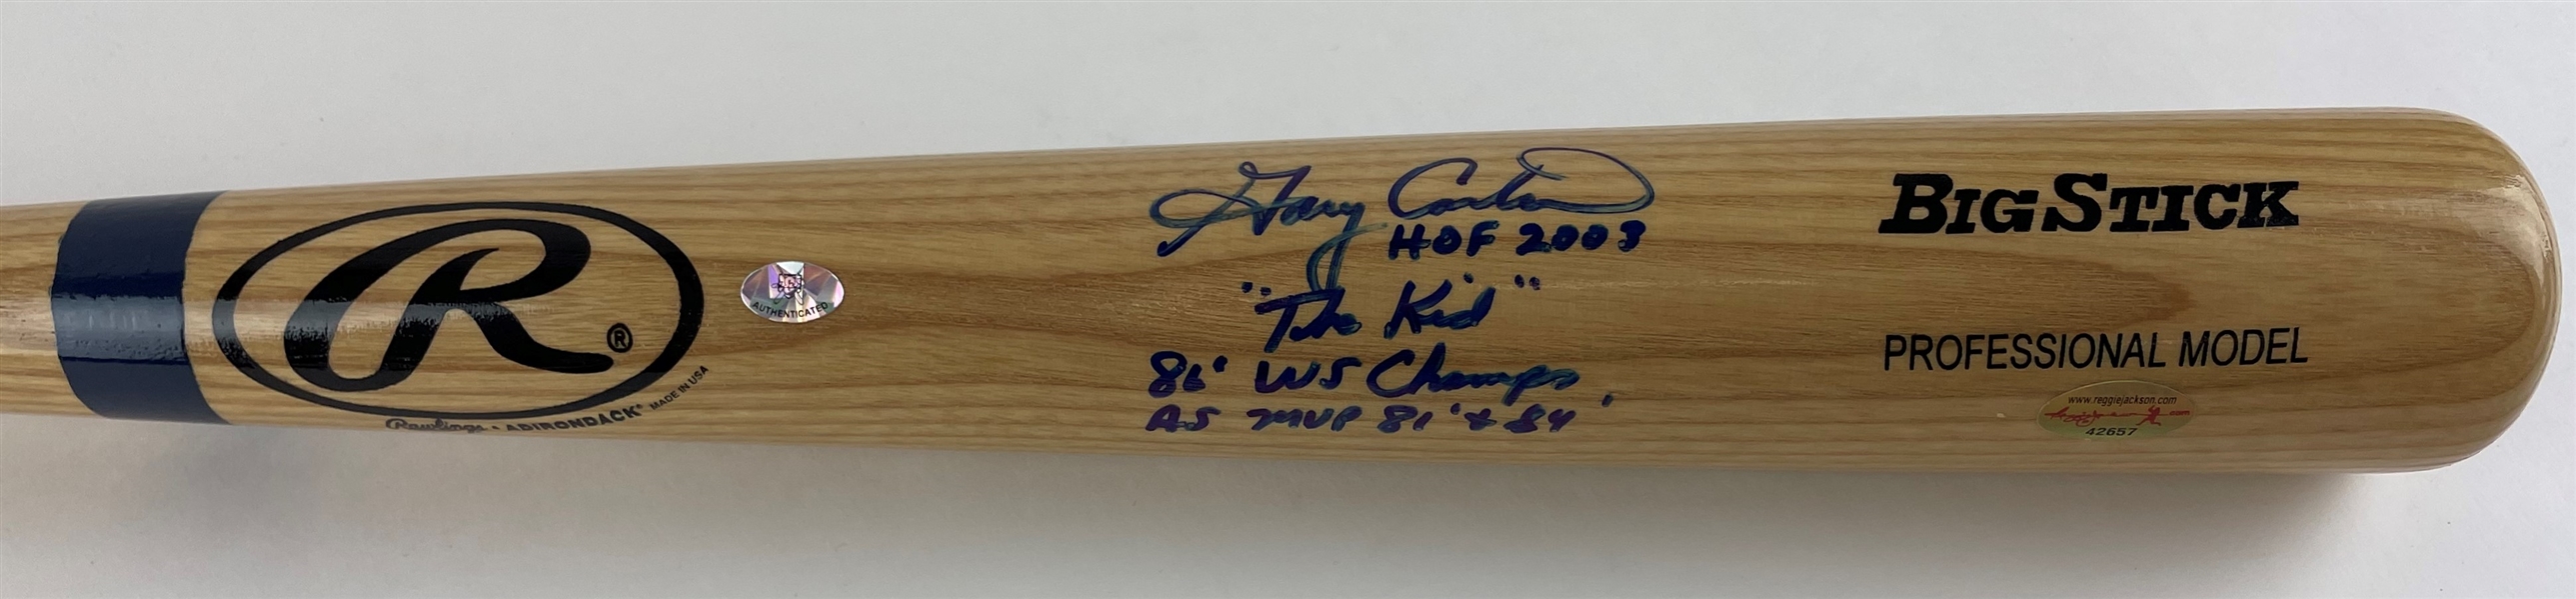 Gary Carter Signed & Inscribed Personal Model Baseball Bat (BAS Guaranteed)